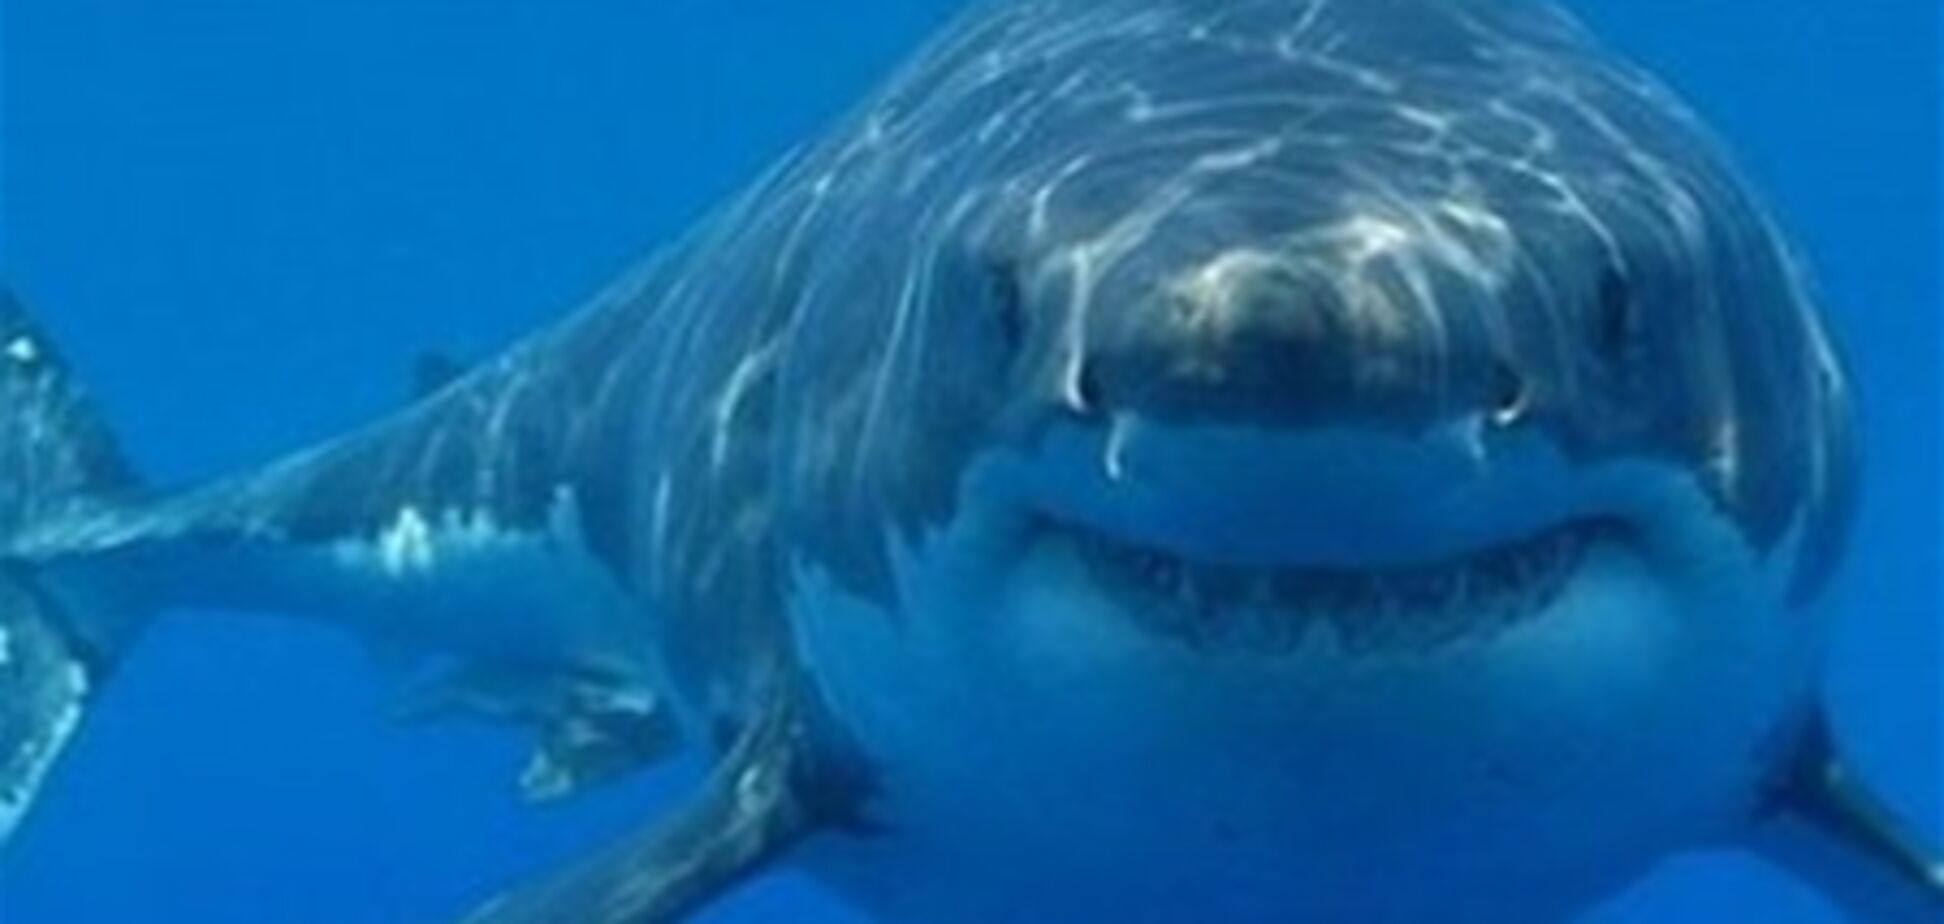 Стали известны подробности нападения акулы на мужчину в Приморье